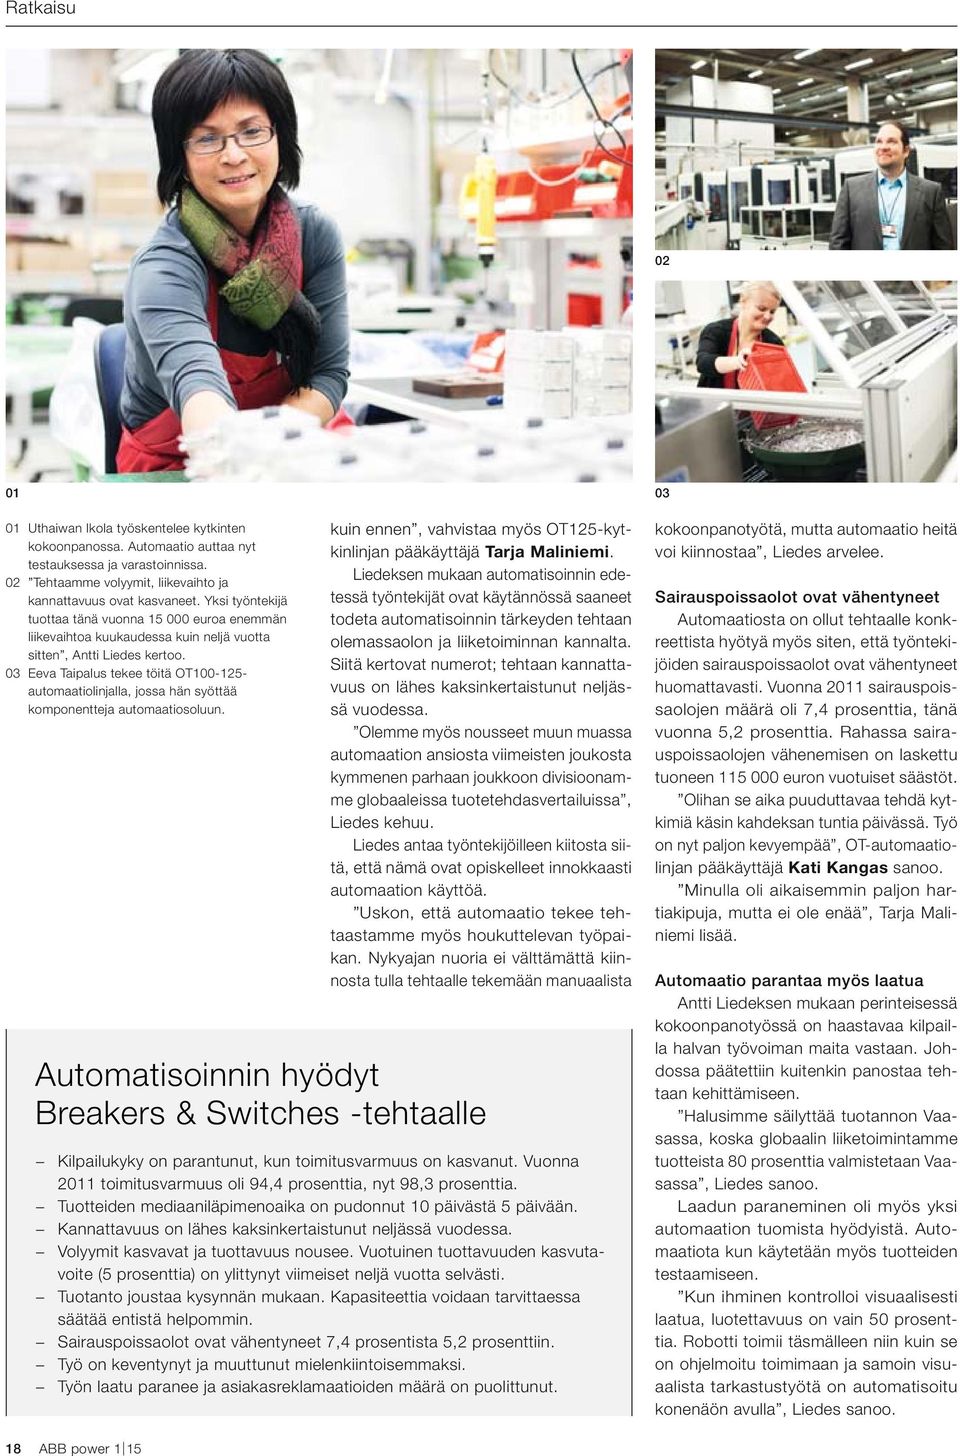 03 Eeva Taipalus tekee töitä OT100-125- automaatiolinjalla, jossa hän syöttää komponentteja automaatiosoluun. kuin ennen, vahvistaa myös OT125-kytkinlinjan pääkäyttäjä Tarja Maliniemi.